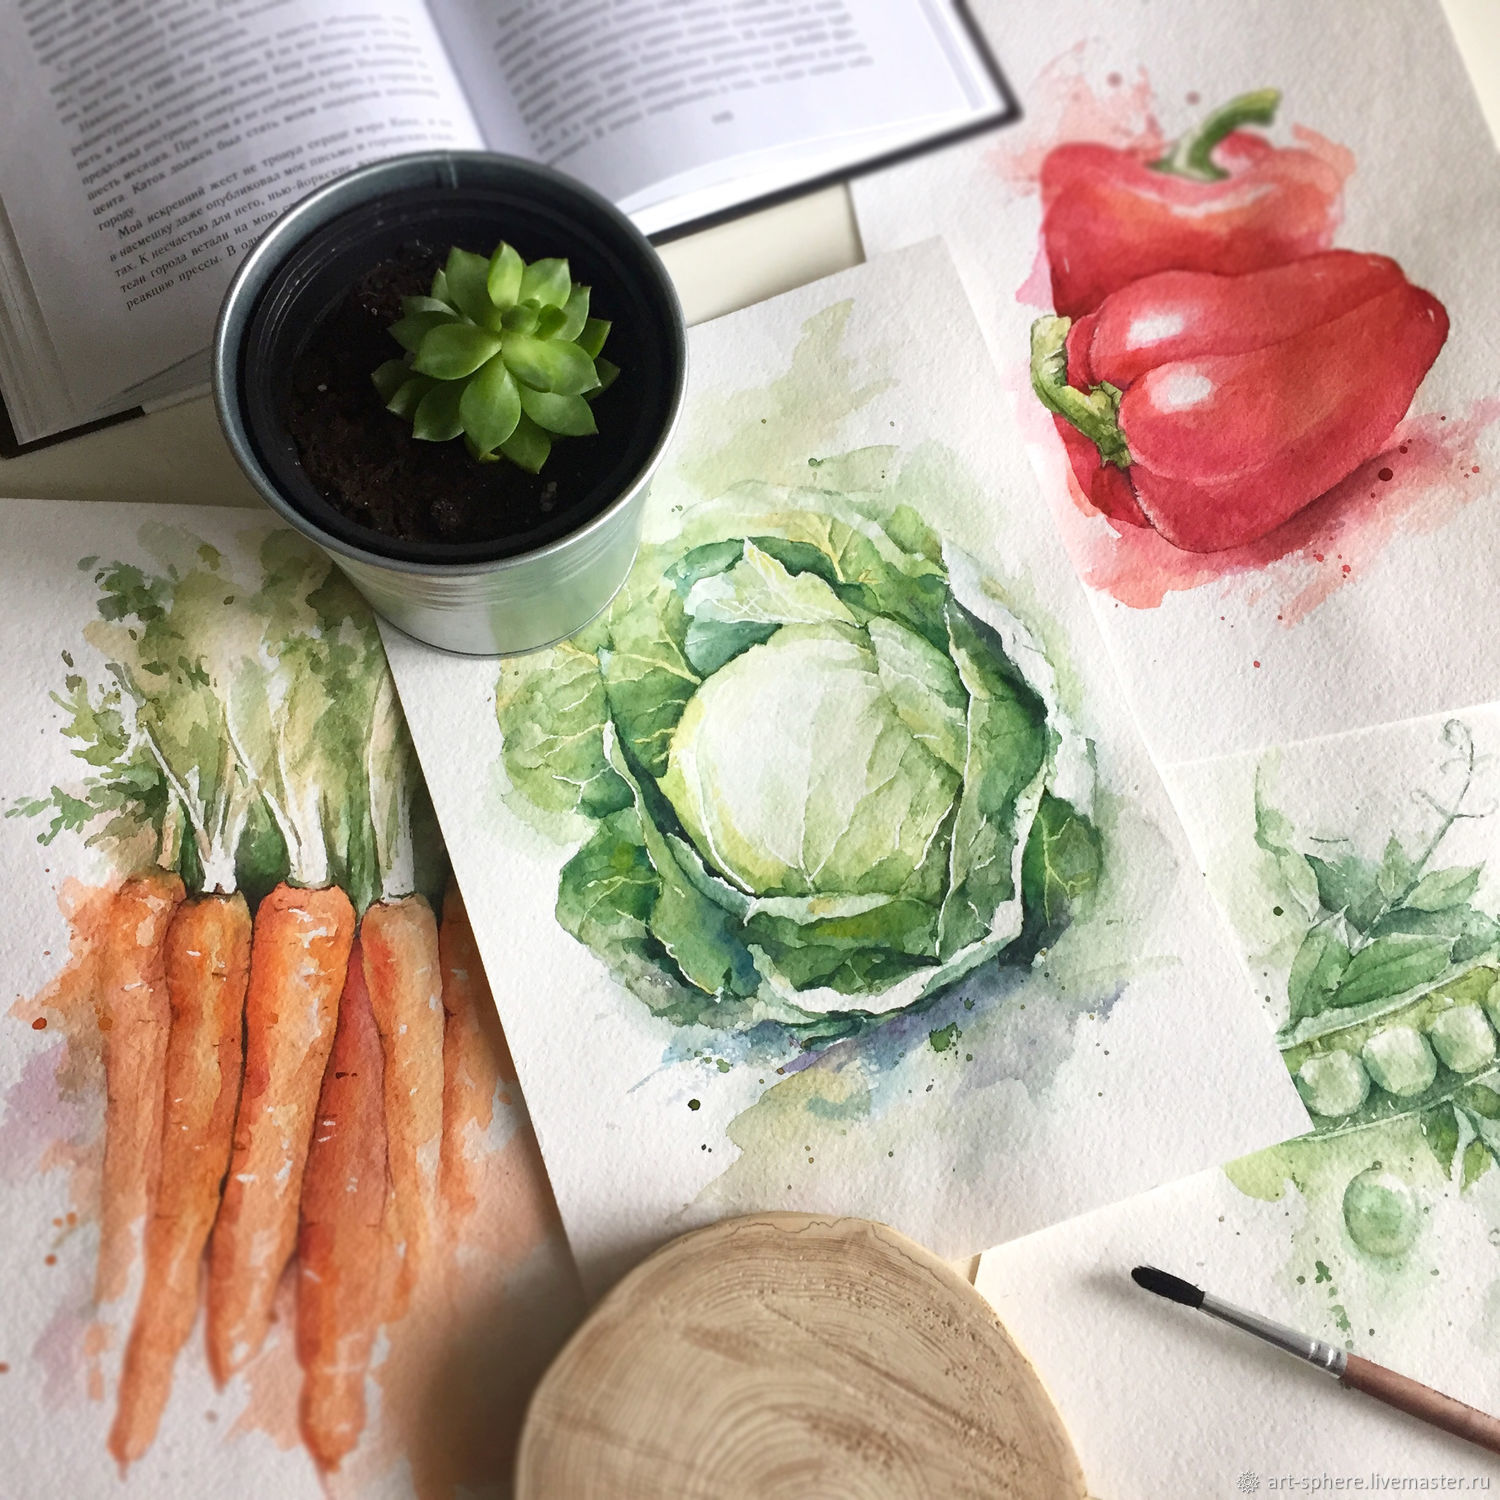 Картина из овощей